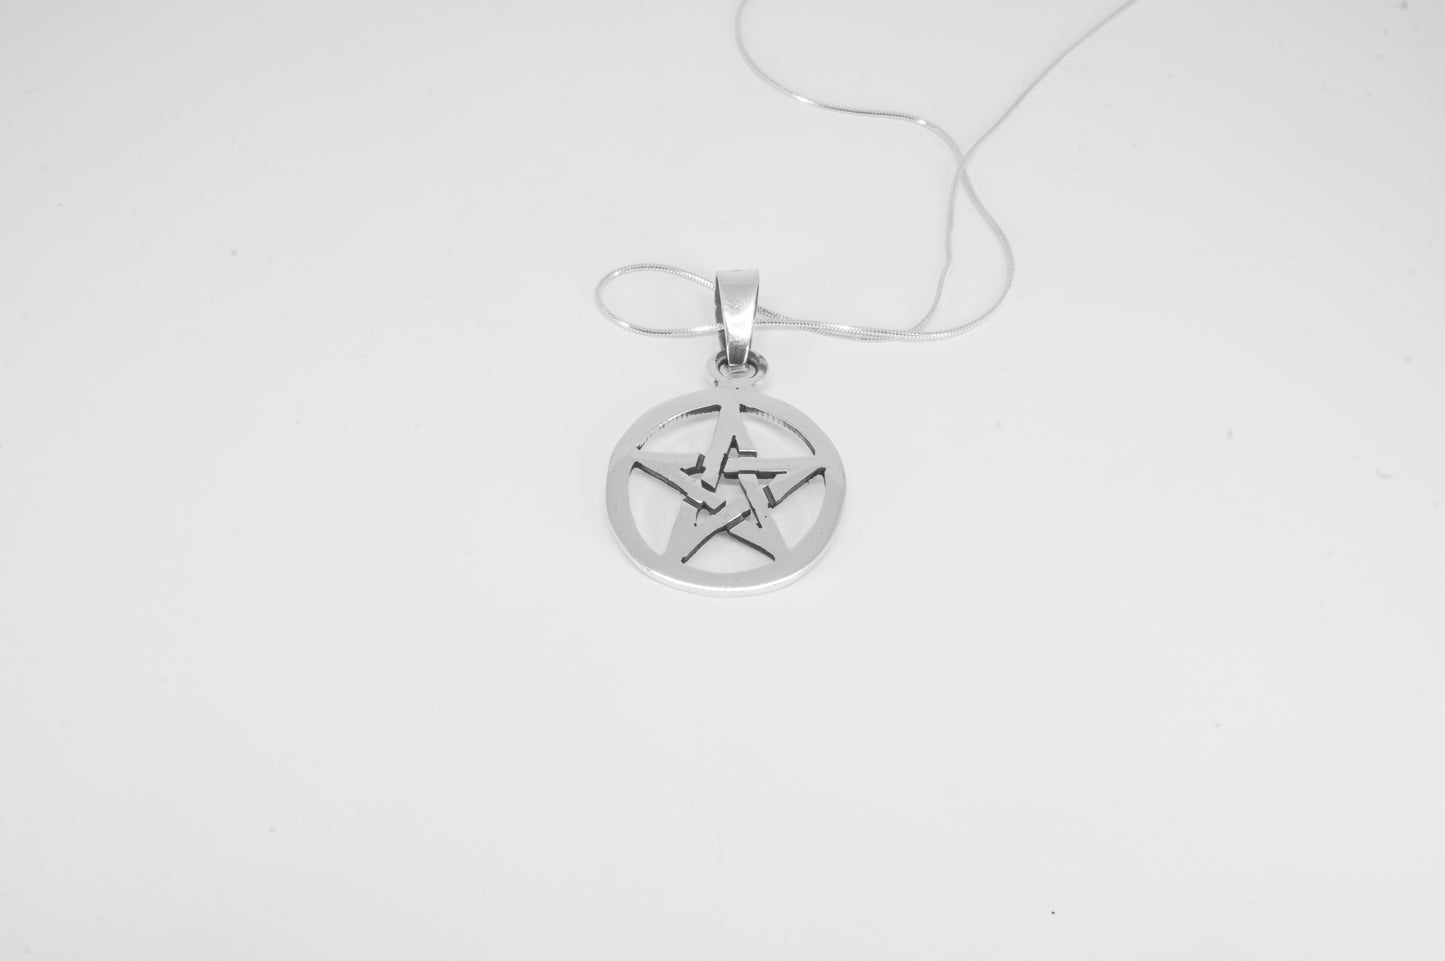 Dije de plata solida 925, Estrella de 5 picos con cadena de 48cms incluida